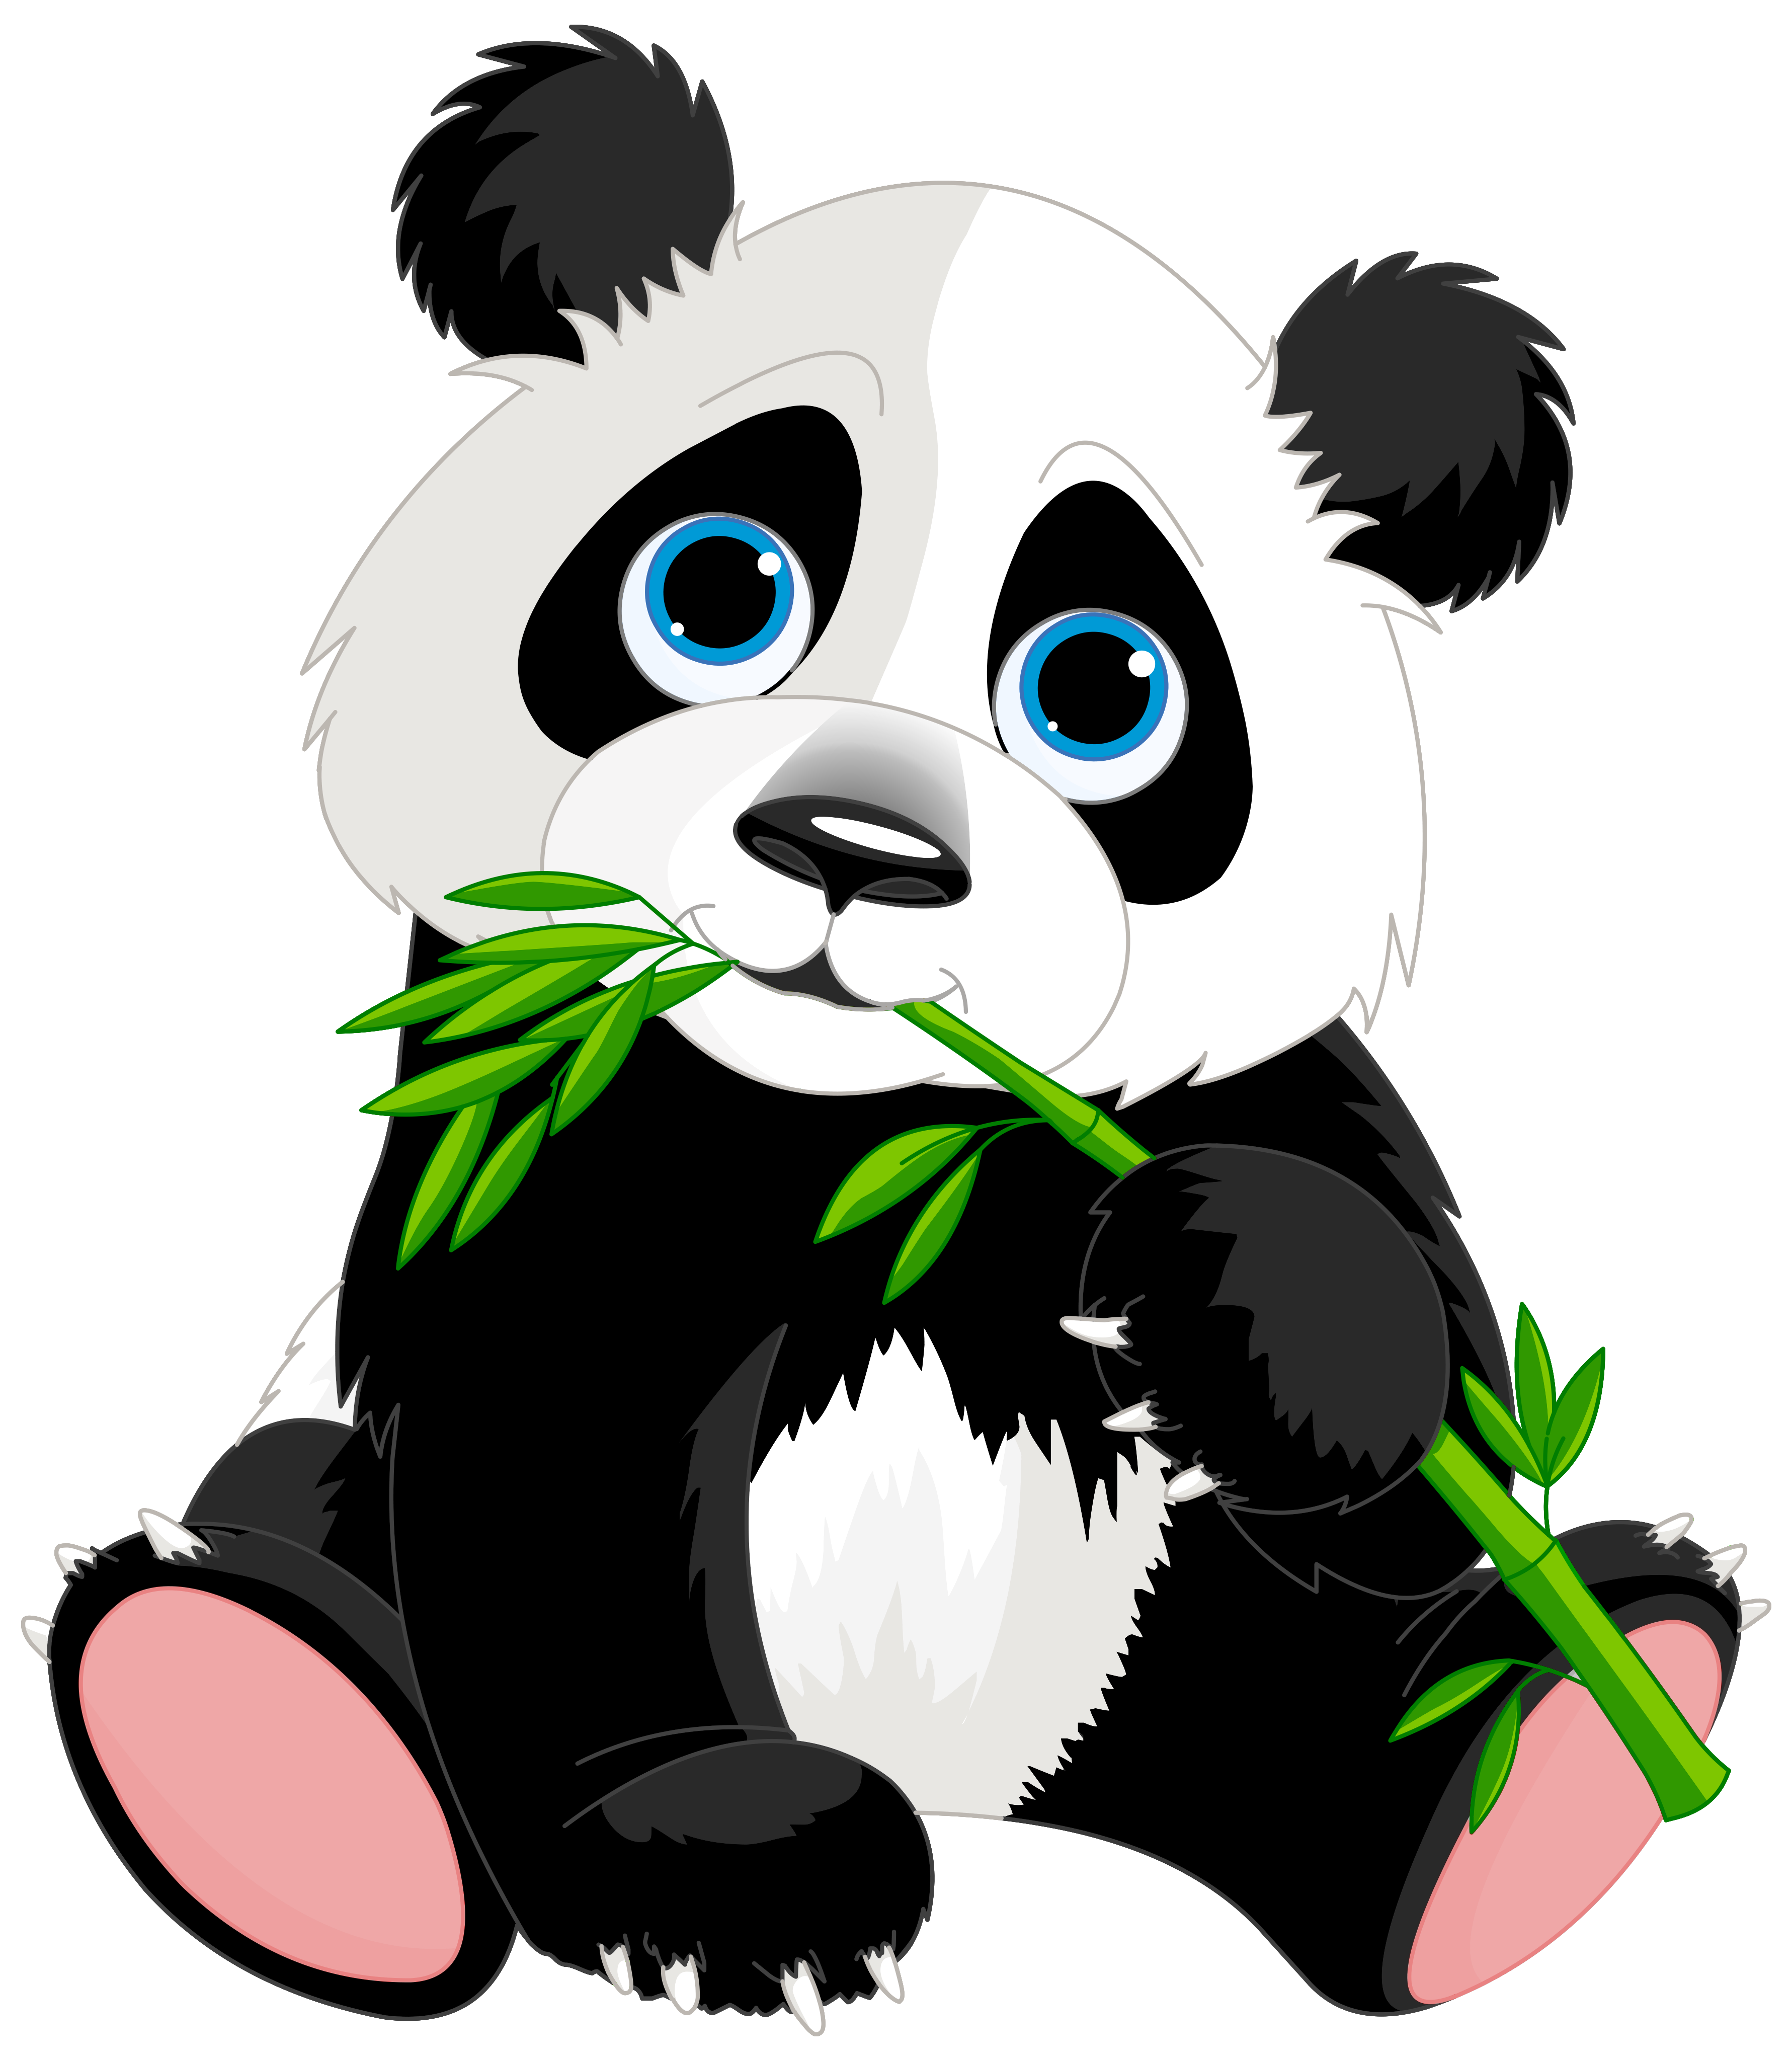 Panda Bear Photos, Download The BEST Free Panda Bear Stock Photos